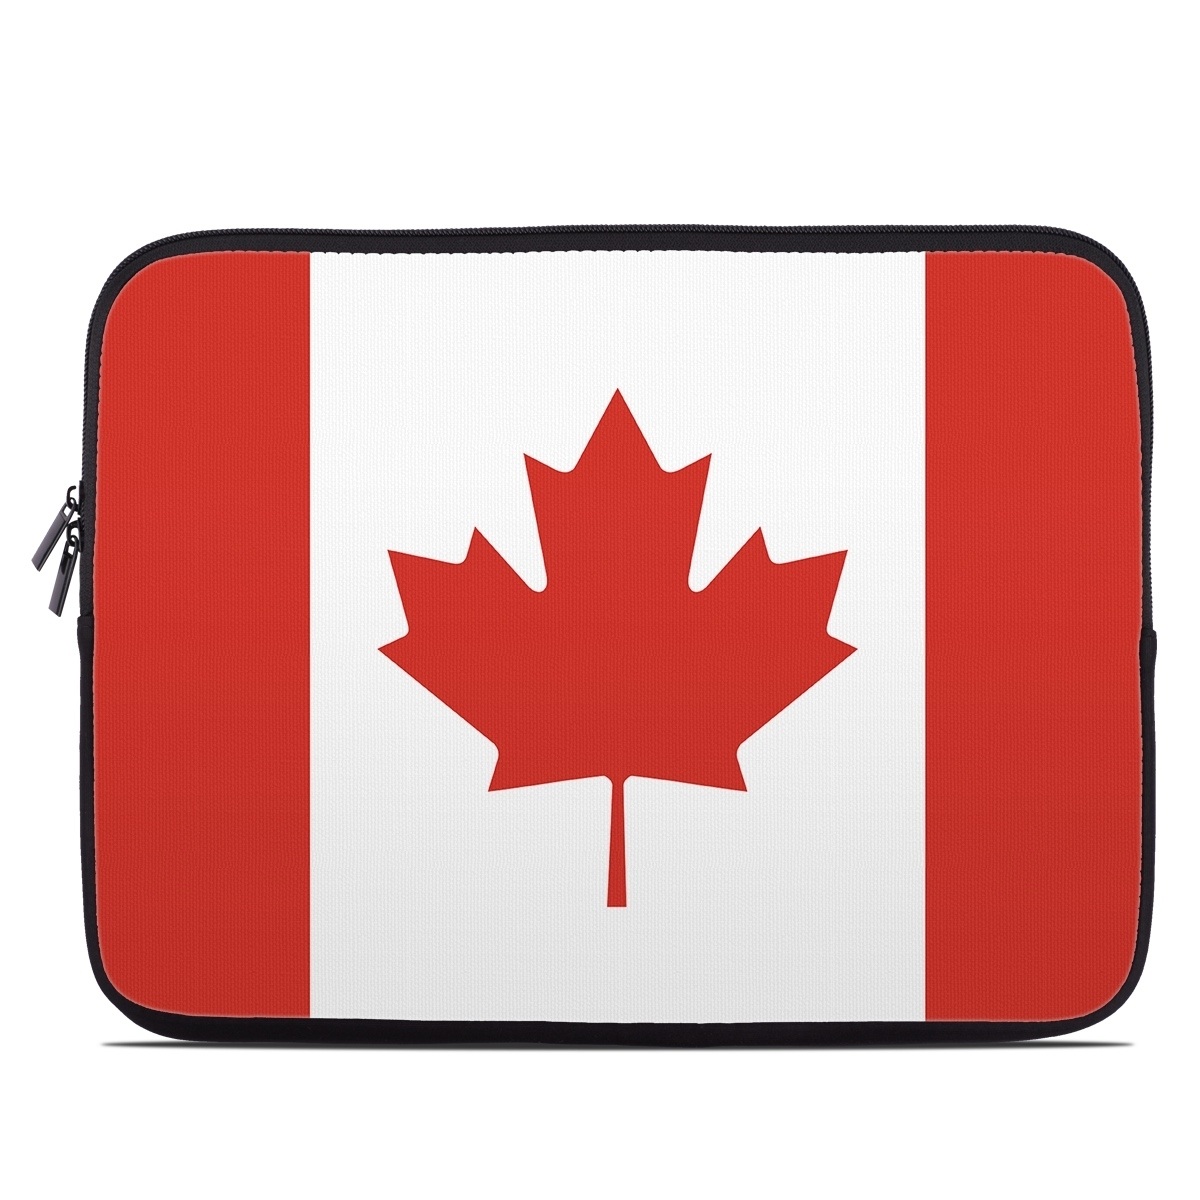 Laptop Sleeve - Canadian Flag (Image 1)